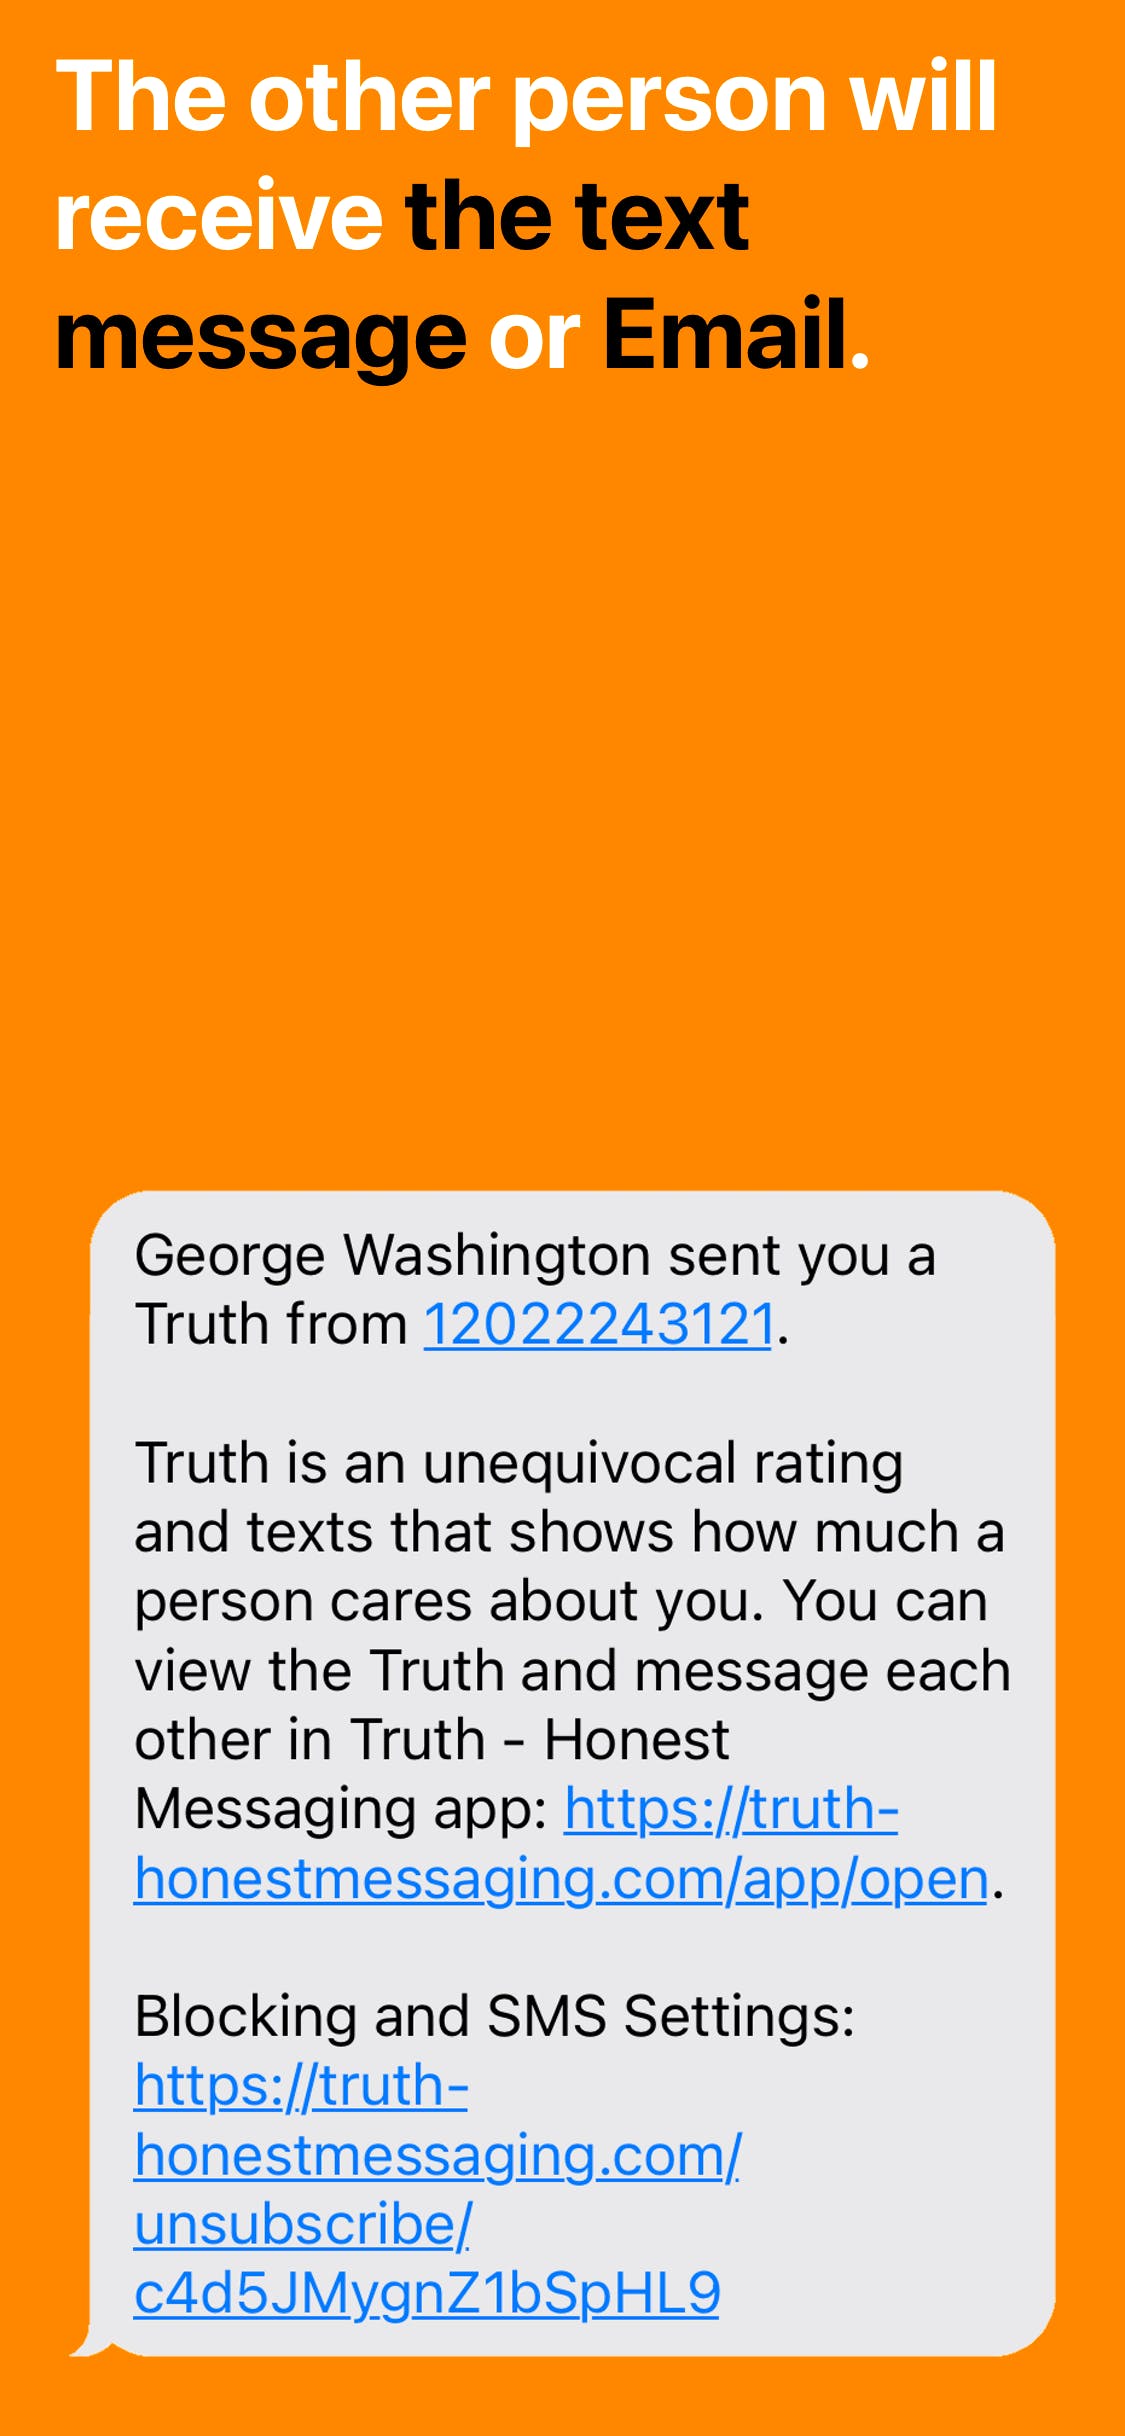 Truth - Honest Messaging media 2